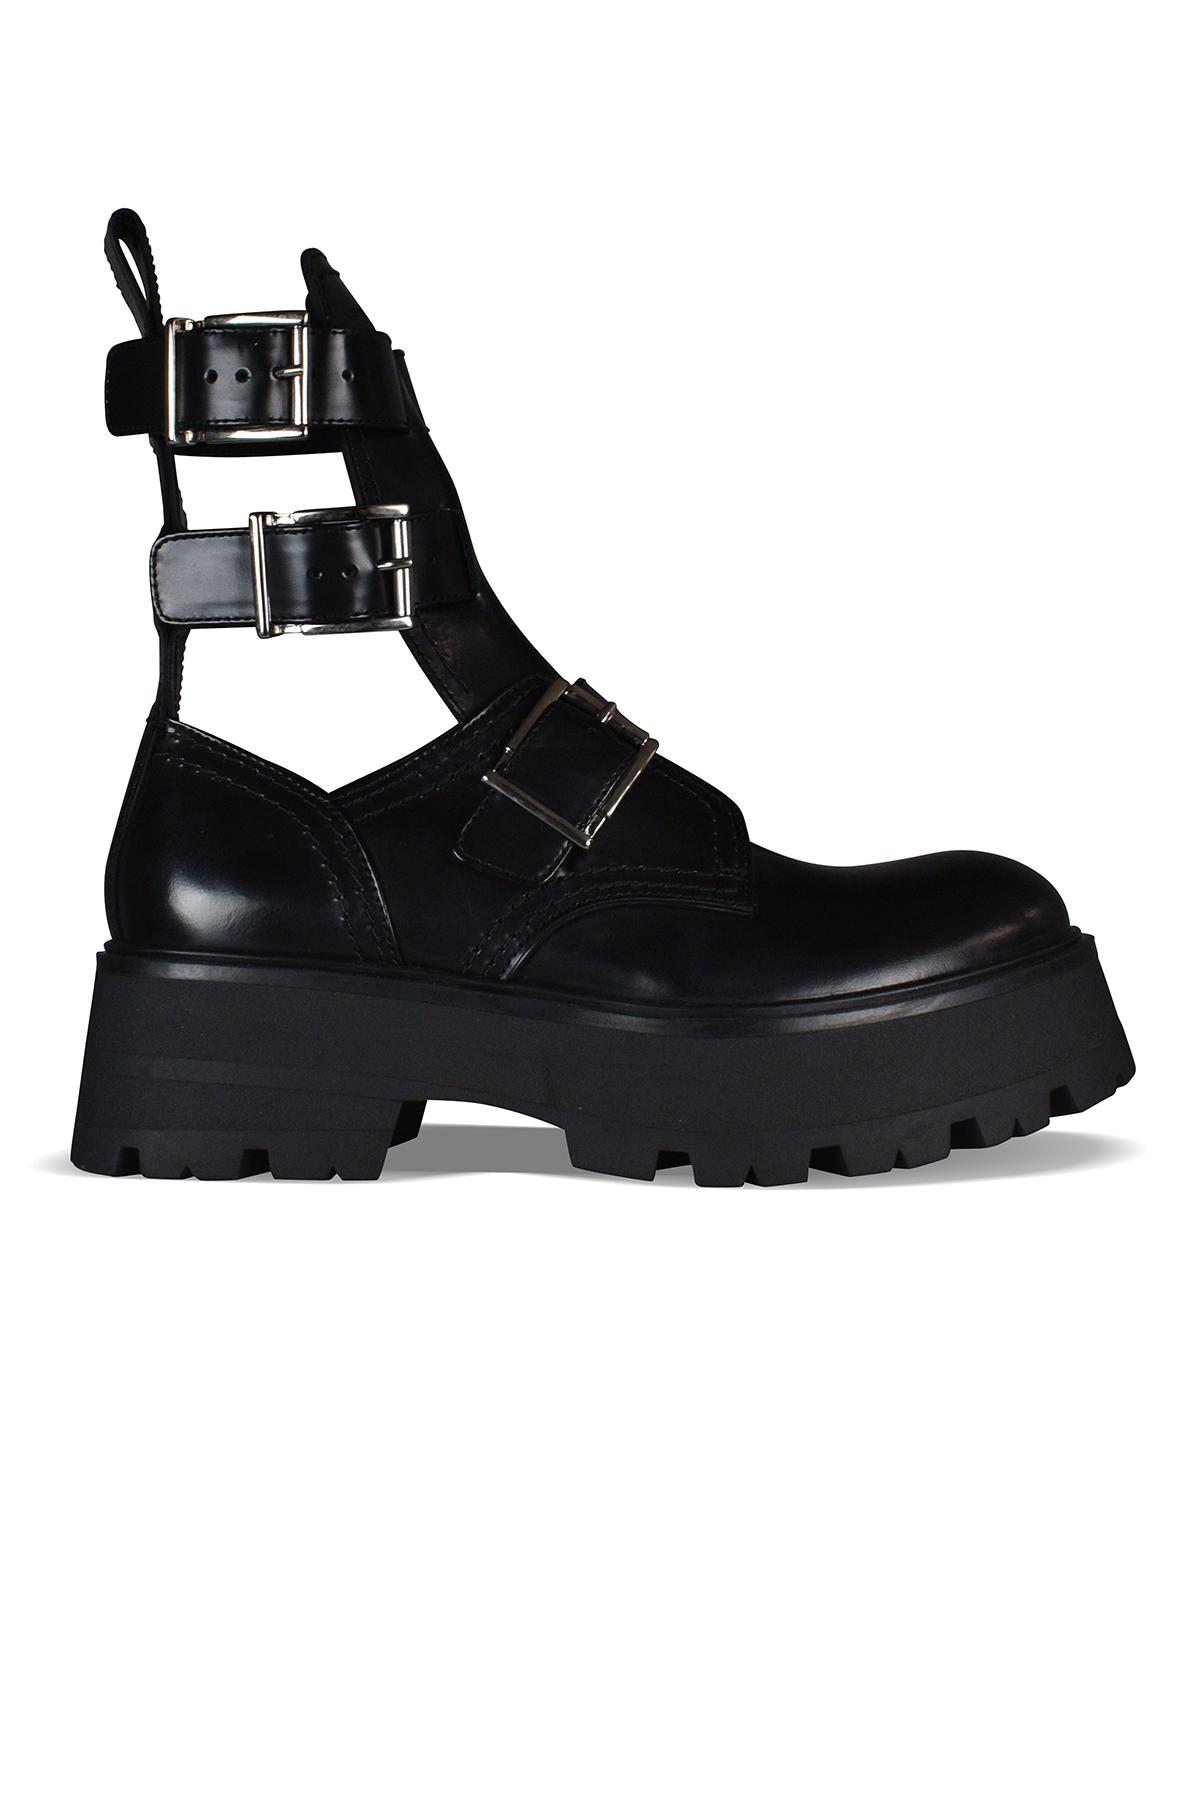 Alexander McQueen Rave Buckle Boots in Black | Lyst UK